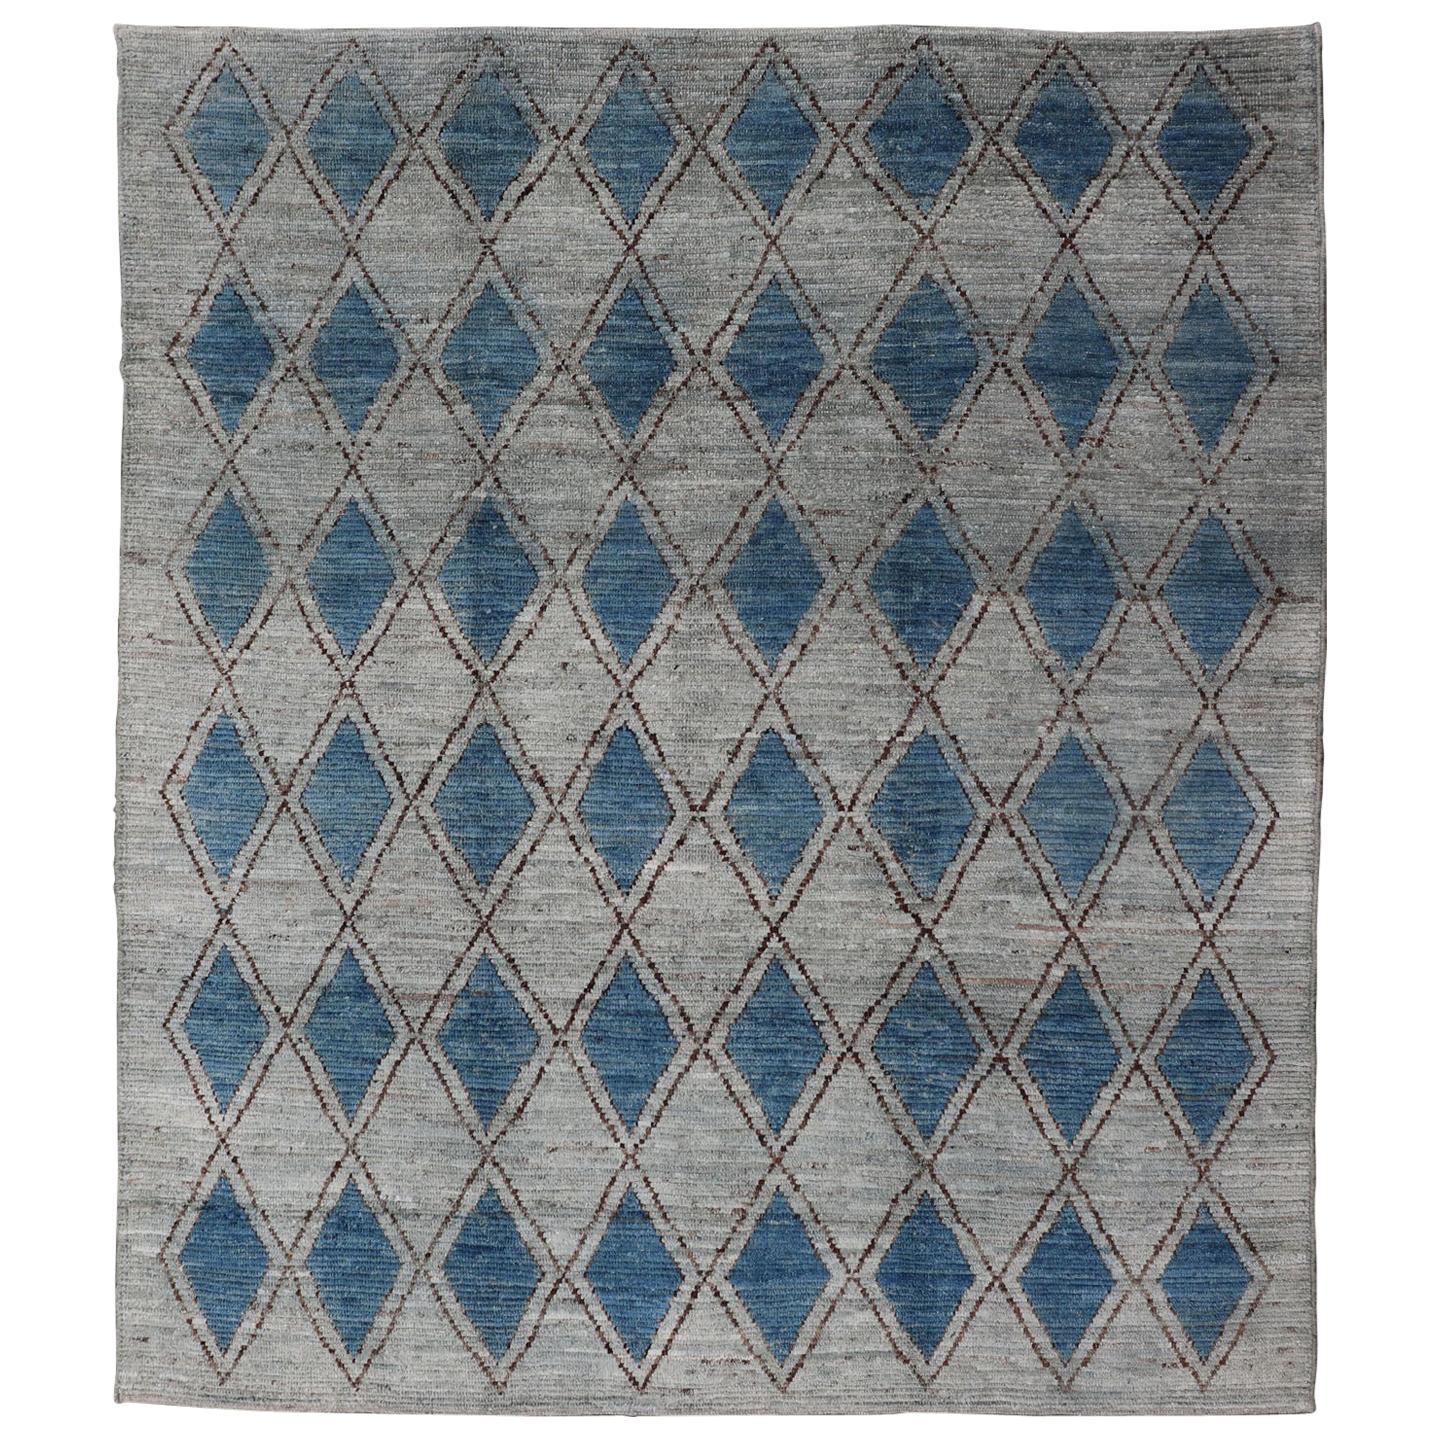 Marokkanischer Teppich von Keivan Woven Arts in modernem Design mit Diamantmuster 